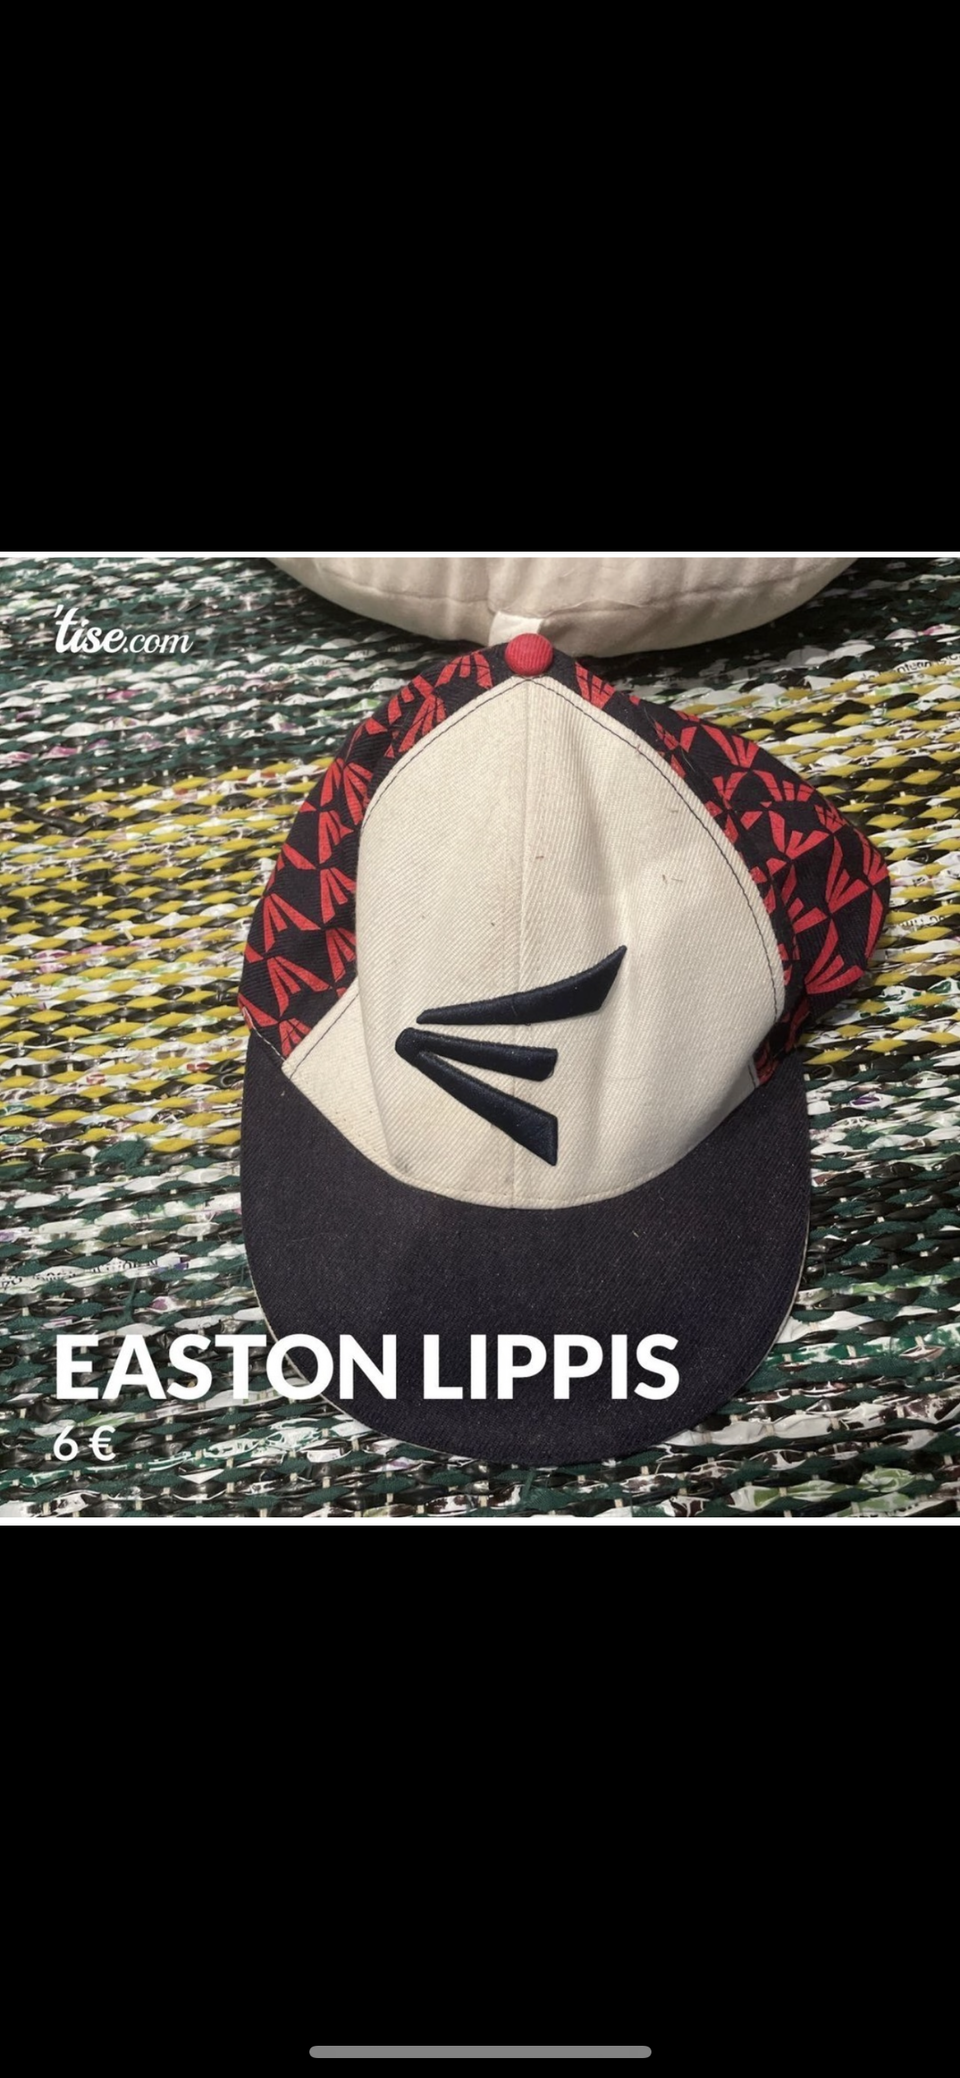 Easton lippis